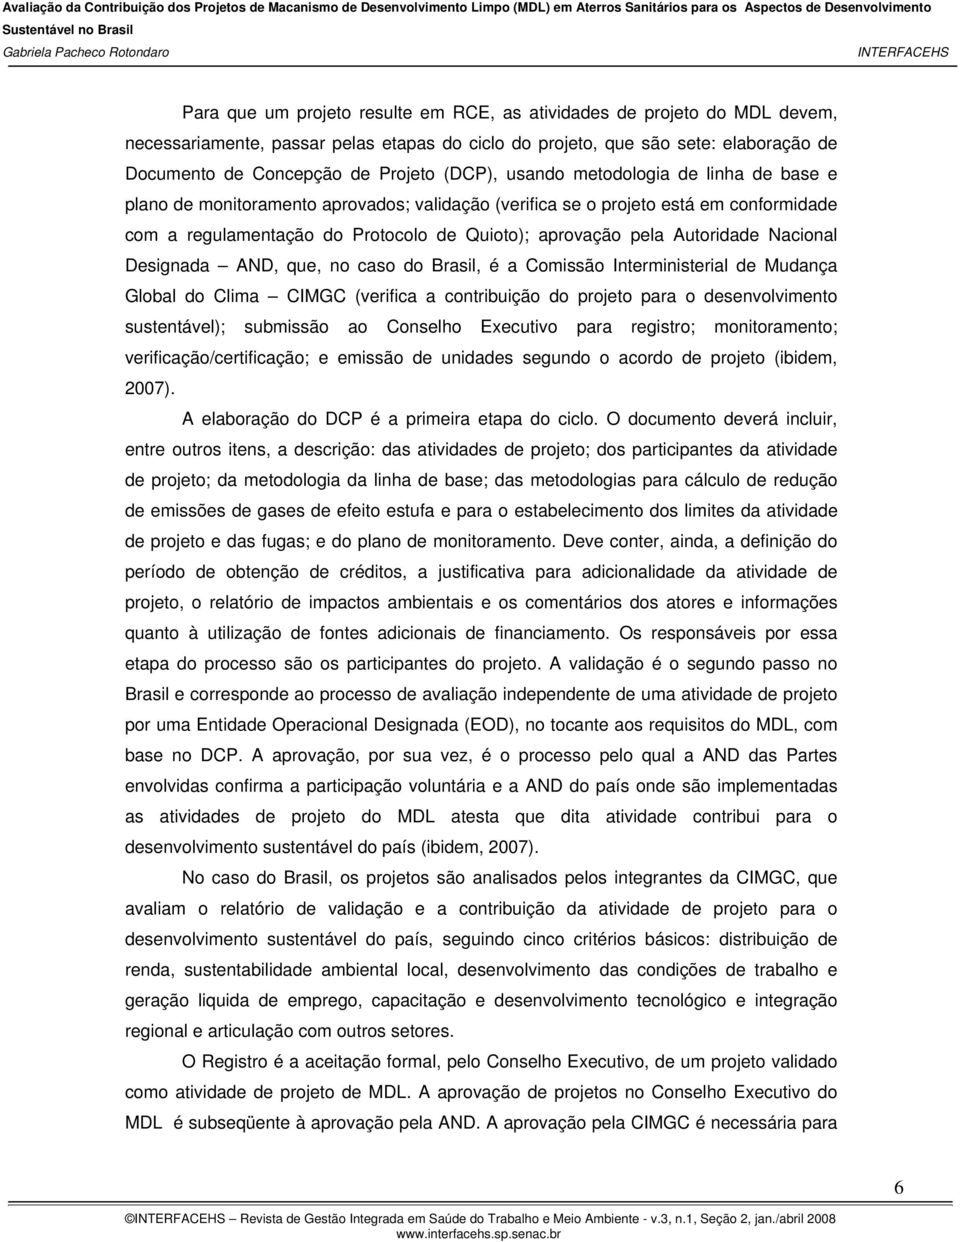 Autoridade Nacional Designada AND, que, no caso do Brasil, é a Comissão Interministerial de Mudança Global do Clima CIMGC (verifica a contribuição do projeto para o desenvolvimento sustentável);